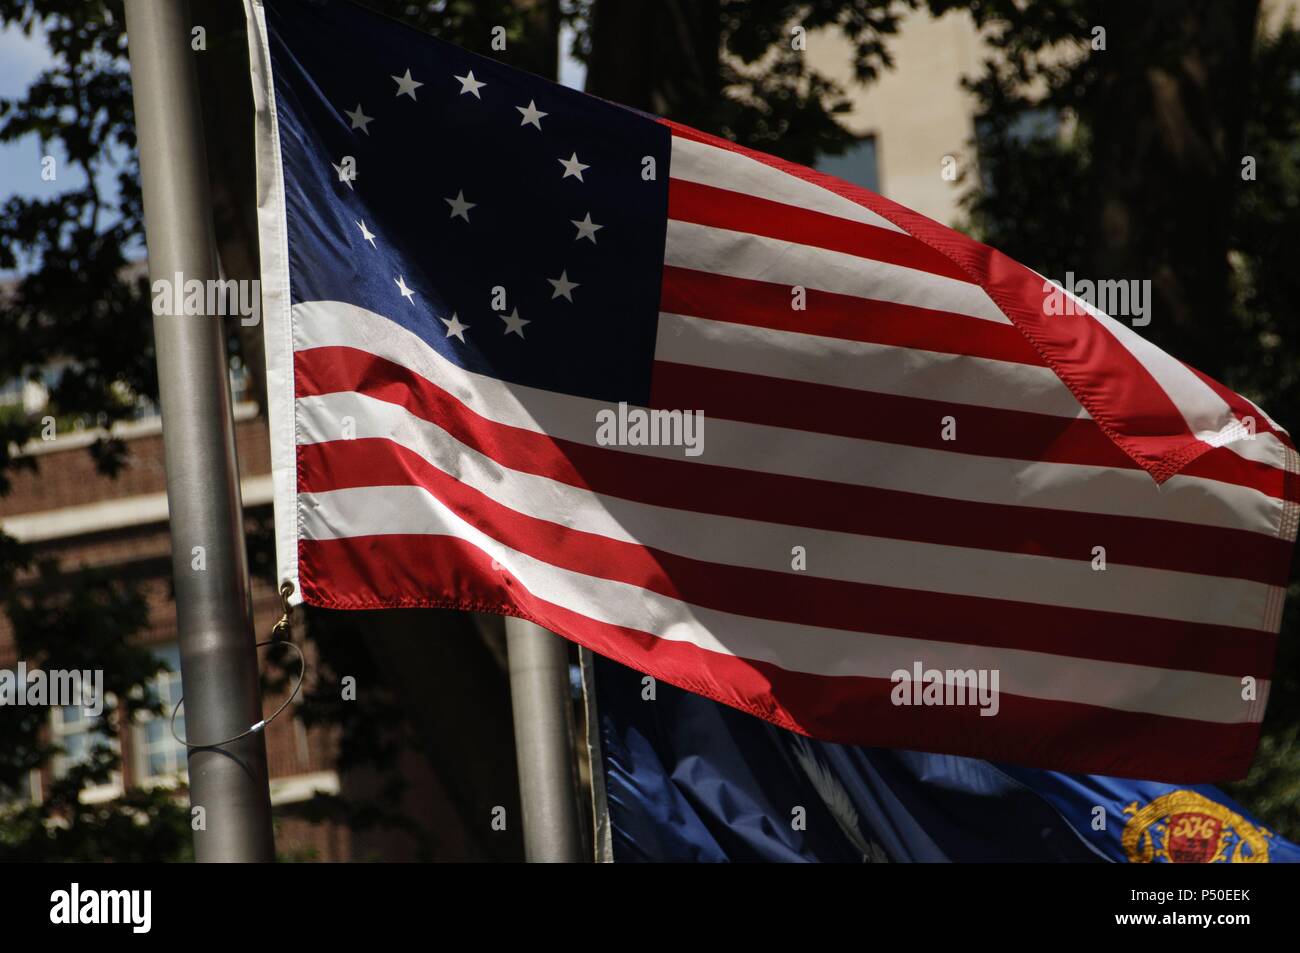 Betsy Ross Flagge. Frühe desing von der Flagge der Vereinigten Staaten von Amerika. Die 13 Sterne repräsentieren die Original 13 Kolonien. Philadelphia. Pennsylvania. Usa. Stockfoto